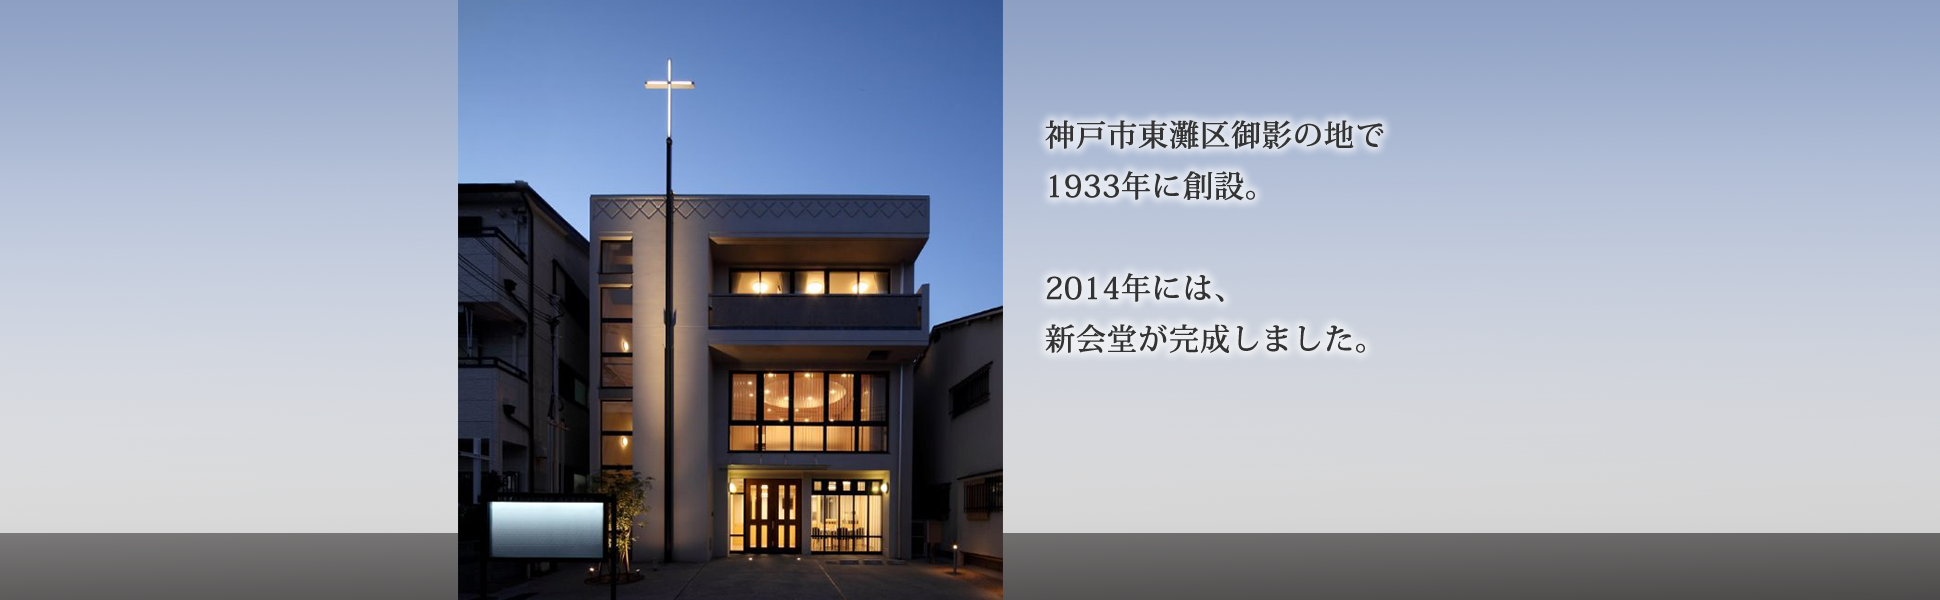 創設は1933年。2014年には新会堂が完成